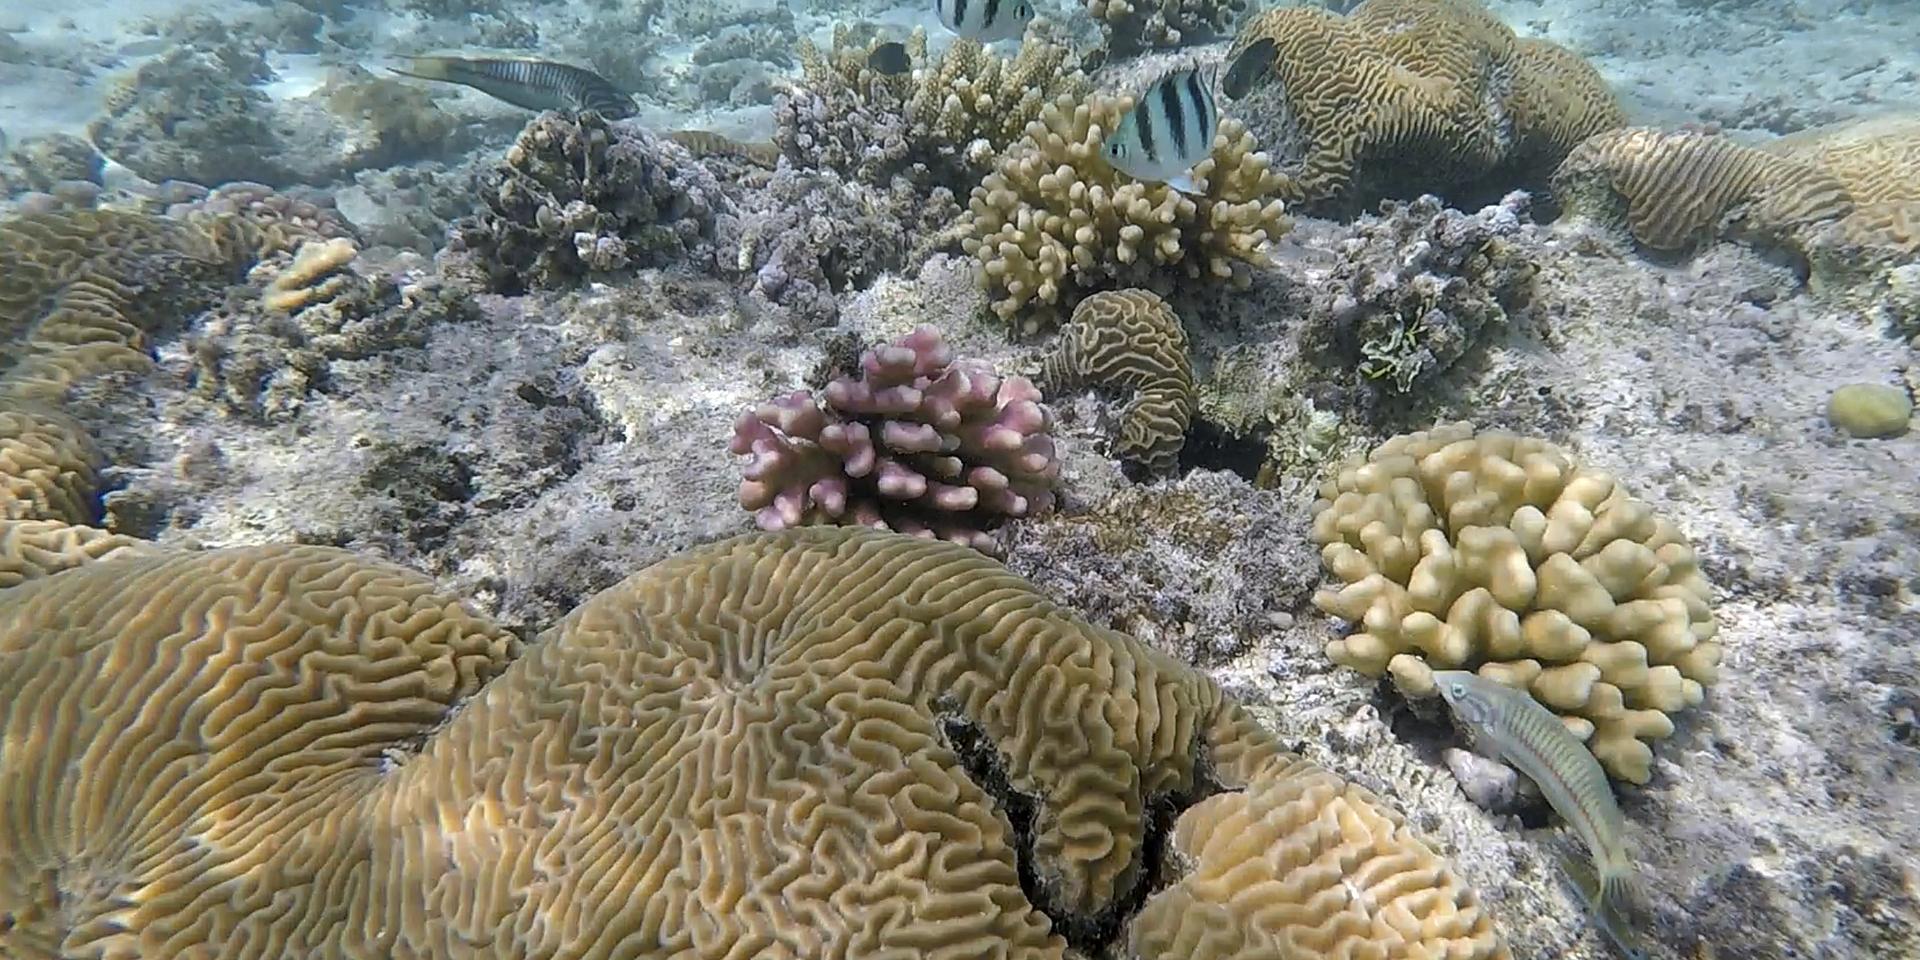 Koldioxiden försurar haven, vilket drabbar korallreven. 